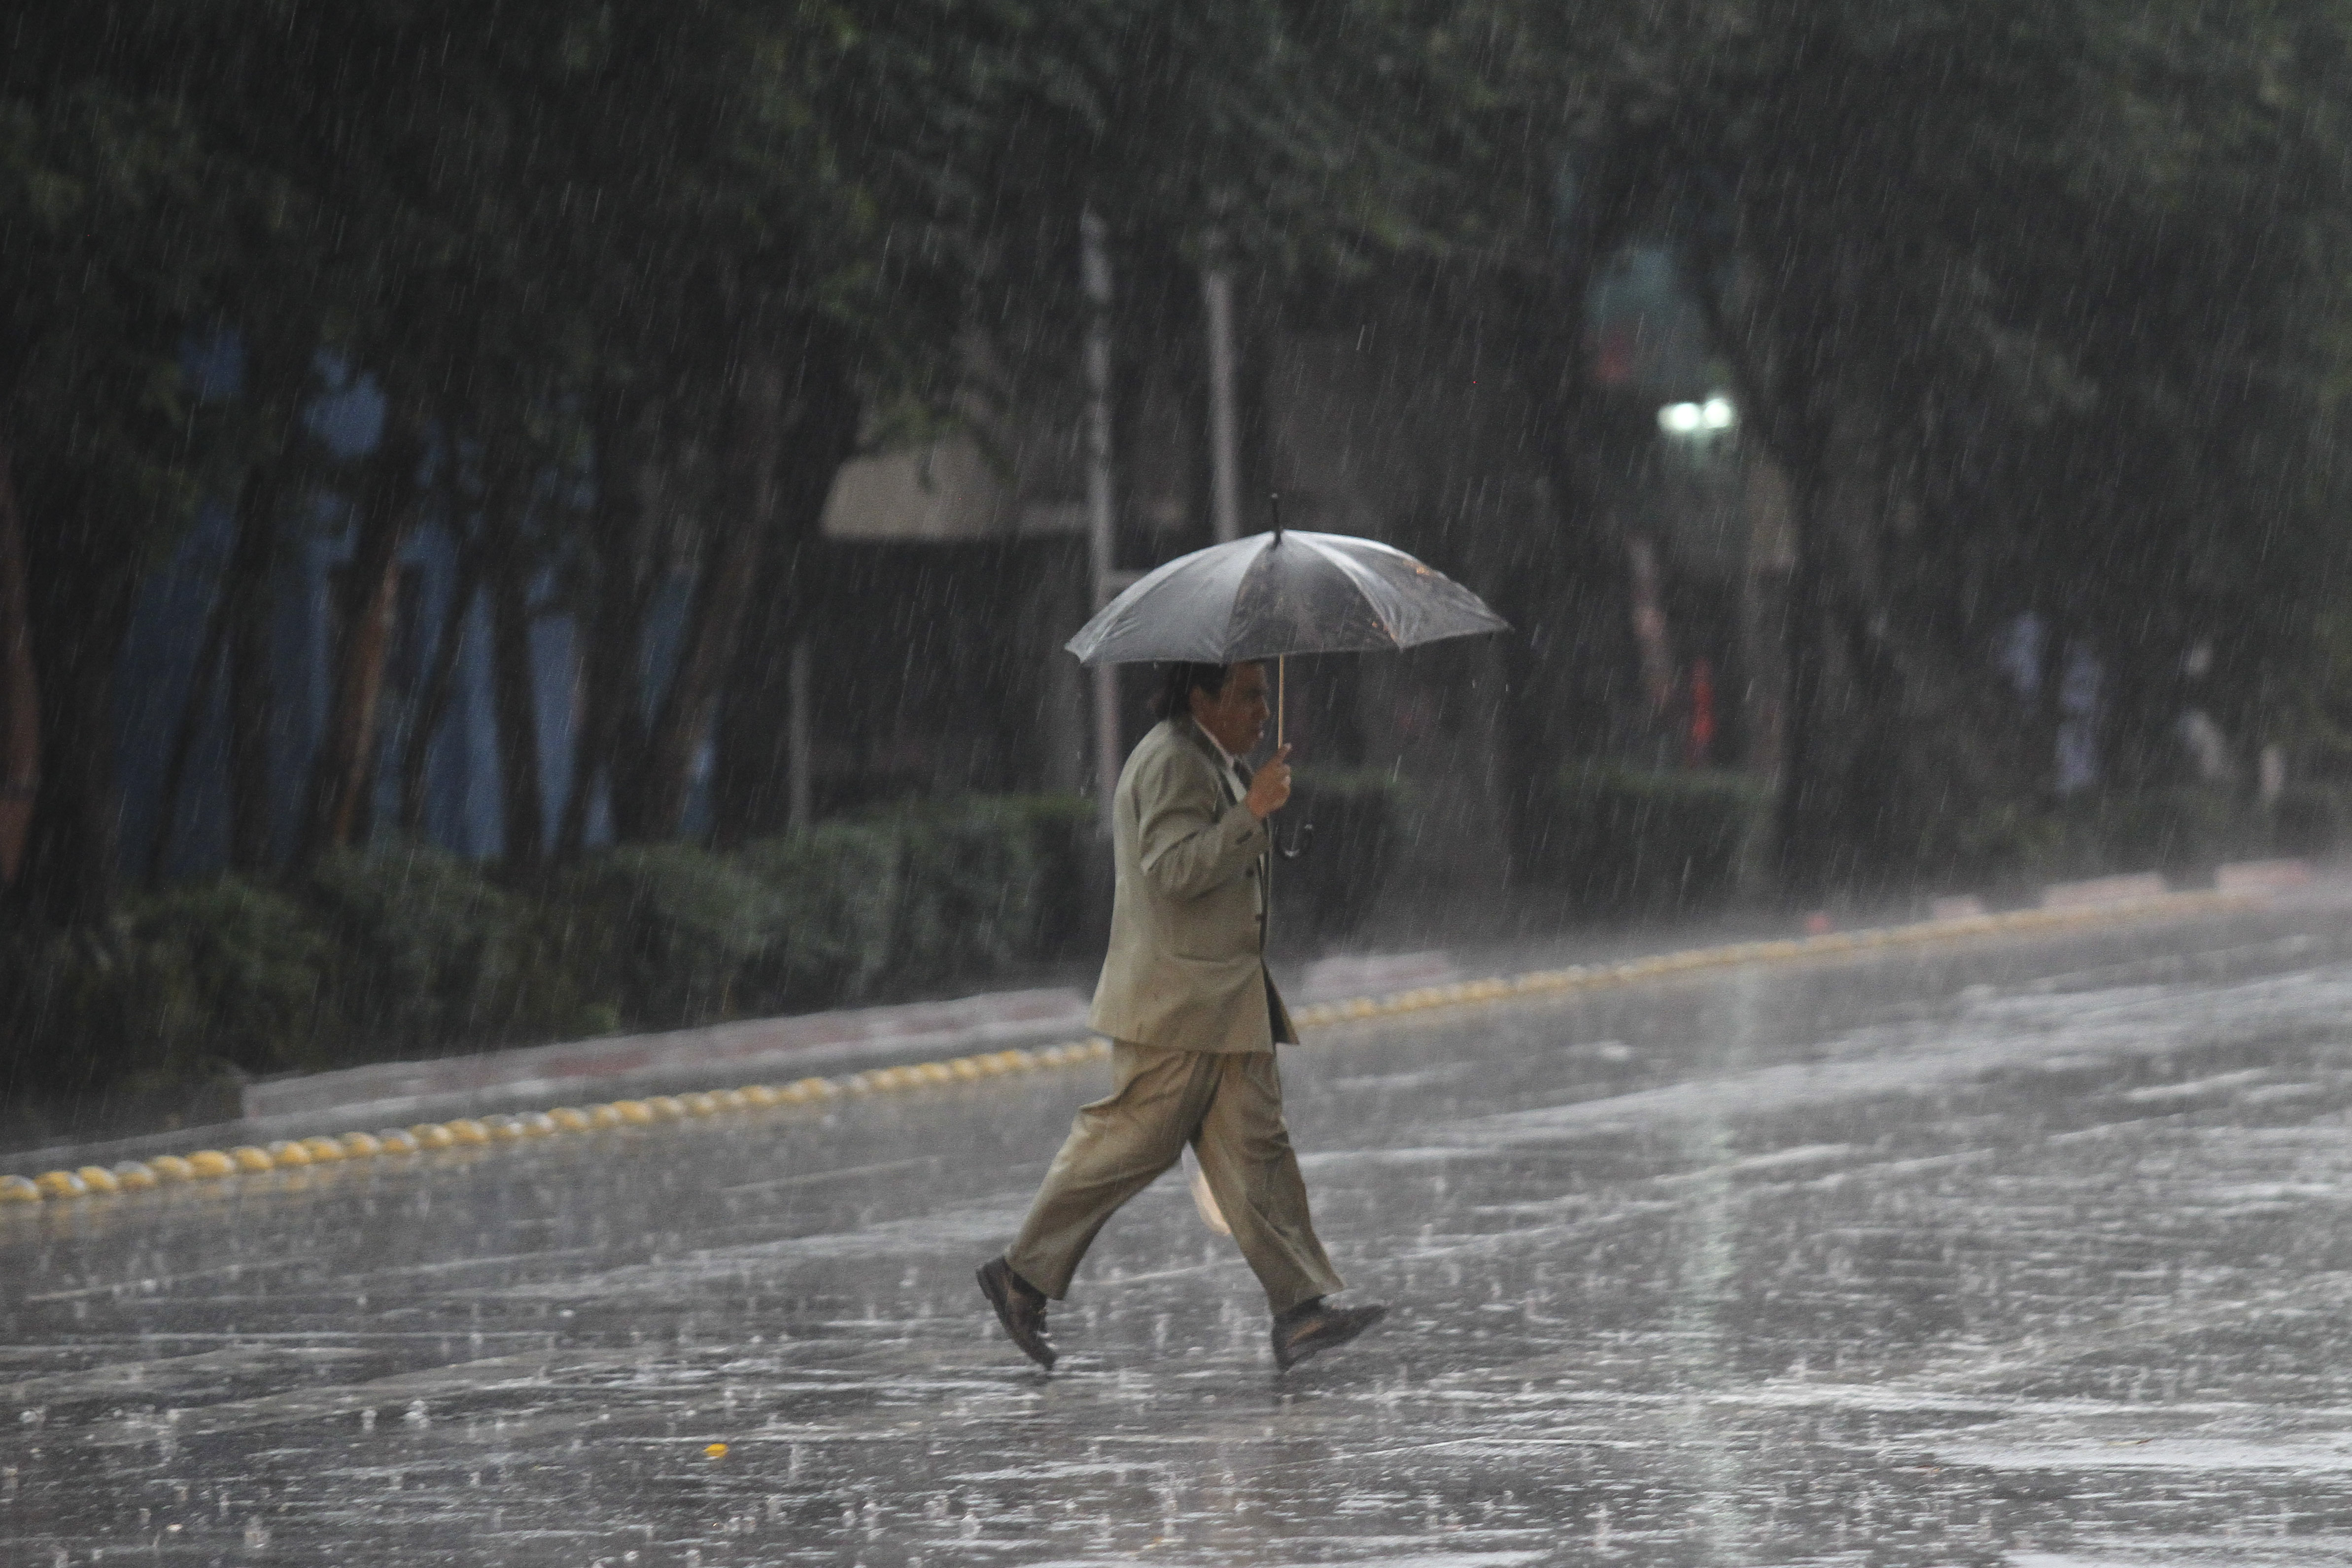  Vientos fuertes y lluvias aisladas en gran parte del país